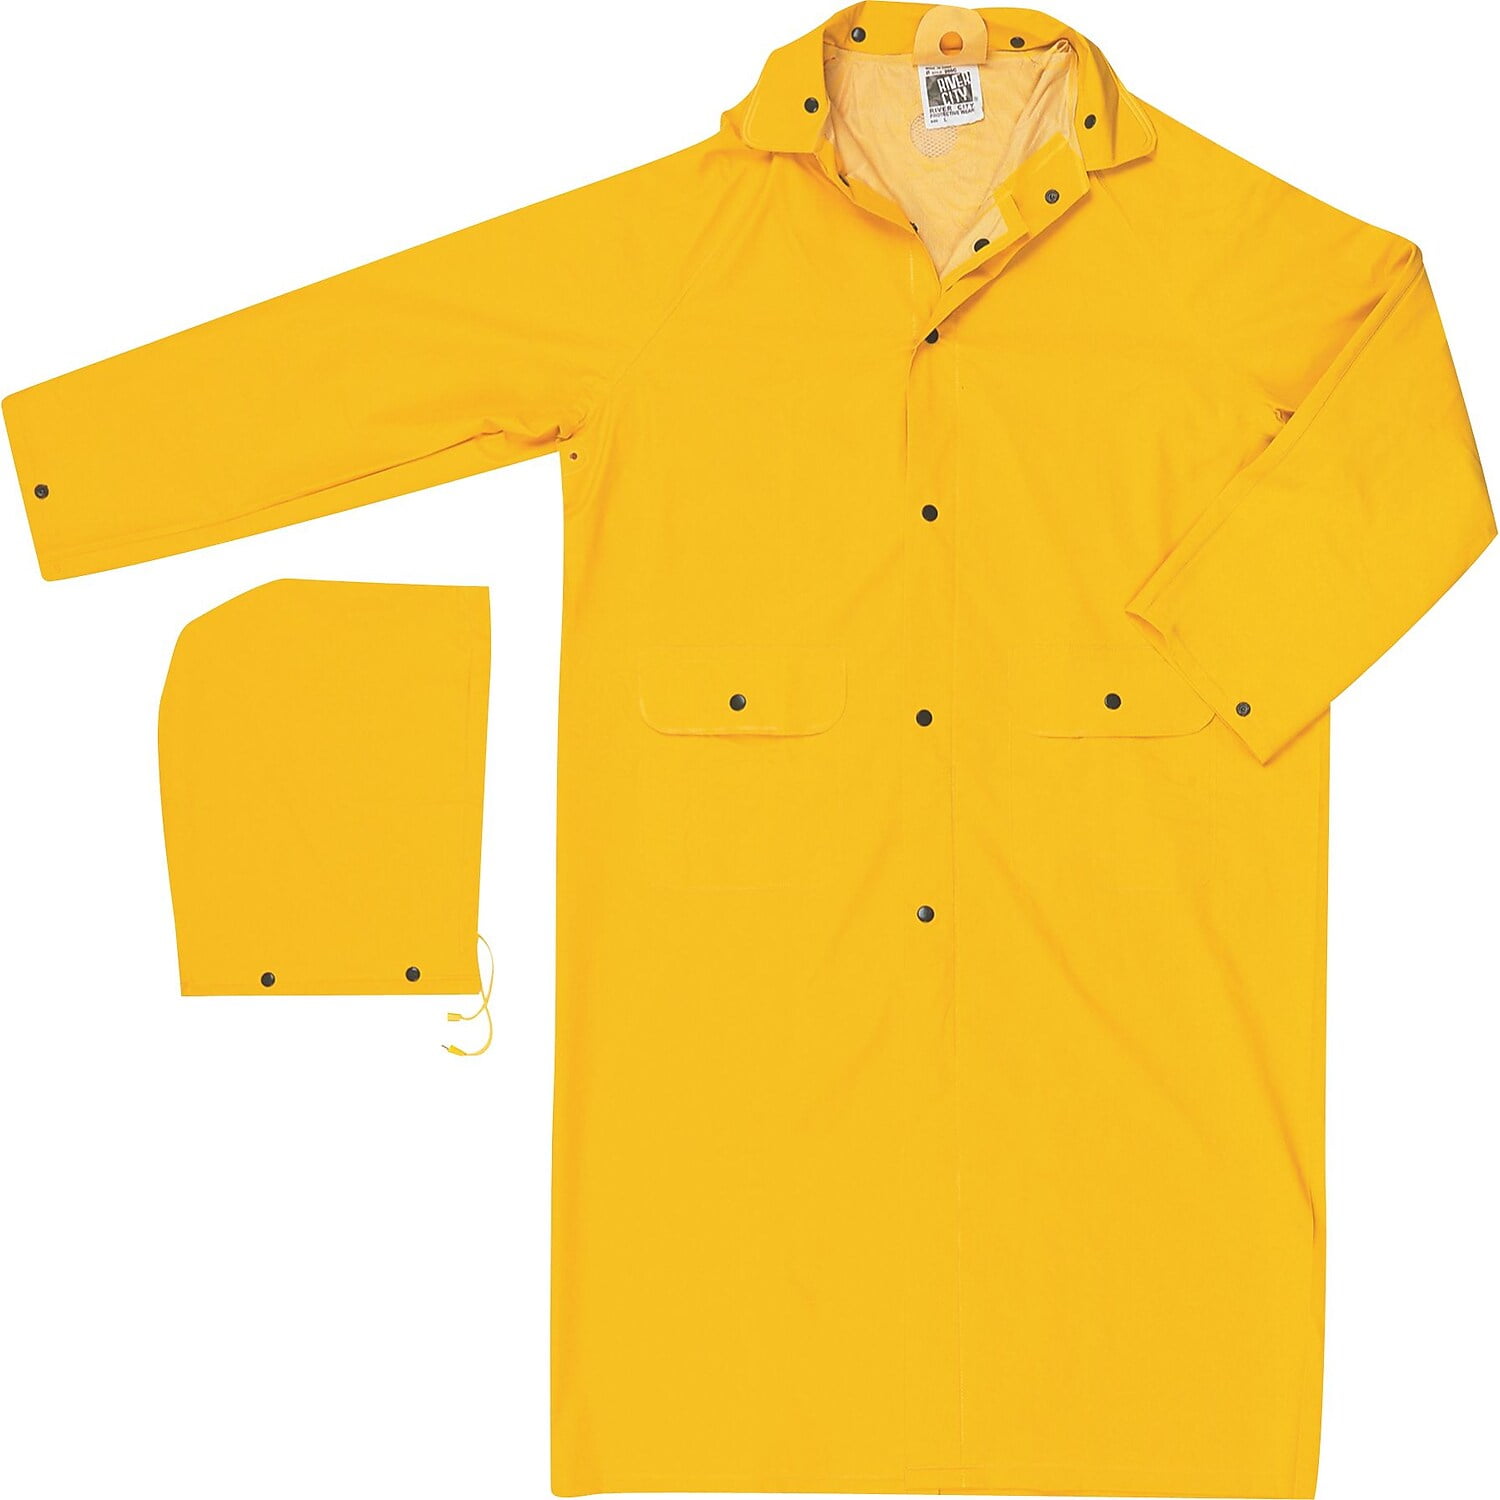 Louisiana Professional Wear Rain Jacket: Size XL, Black & Fluorescent Yellow, Polyurethane & Nylon - Reversible | Part #910SHJBYXL